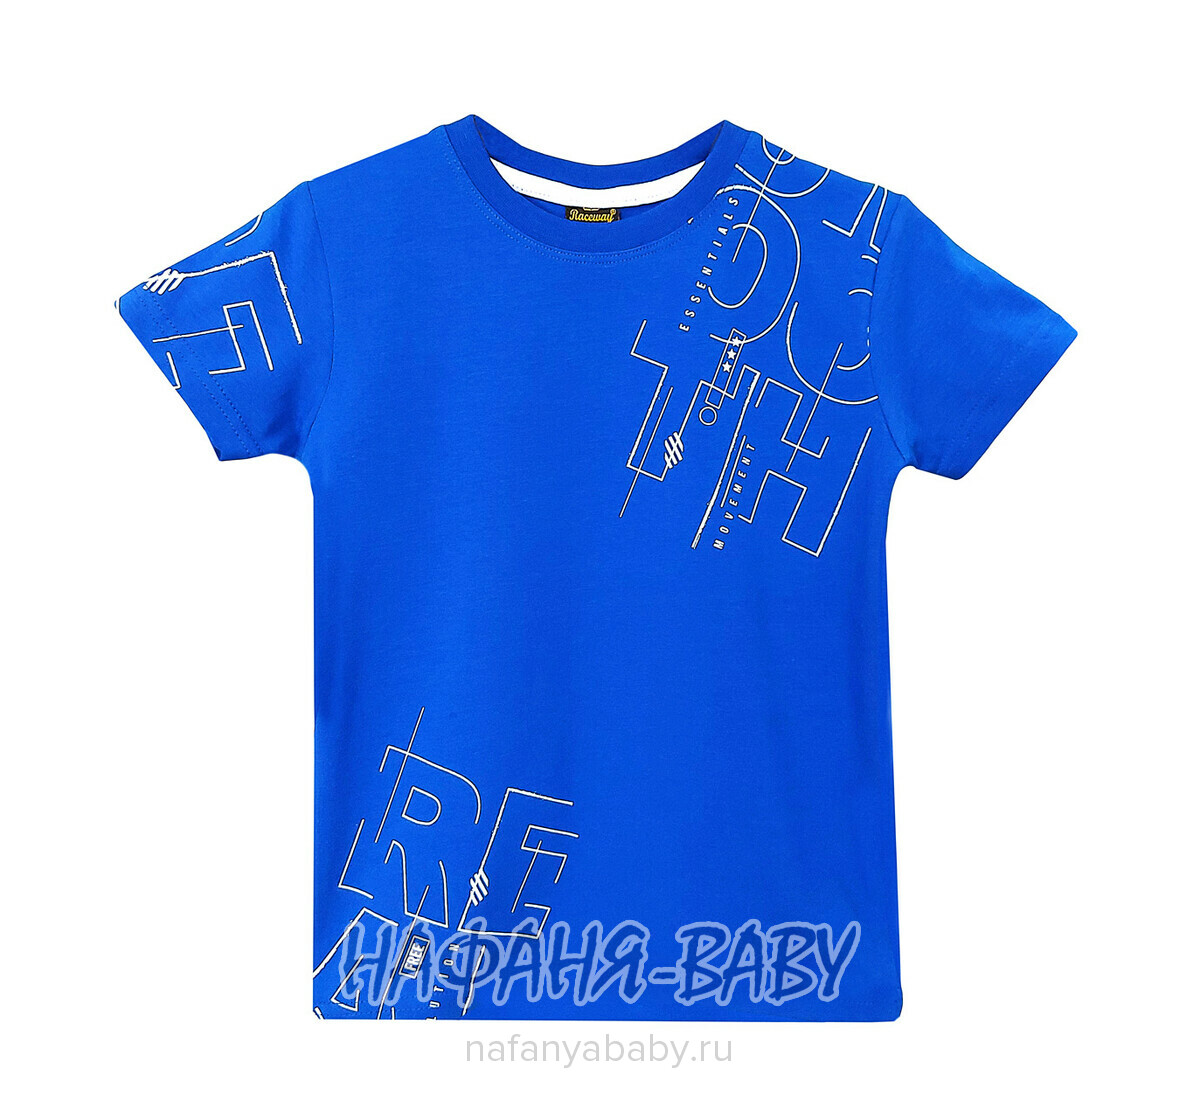 Детская футболка RCW арт. 5824, 5-8 лет, цвет синий, оптом Турция